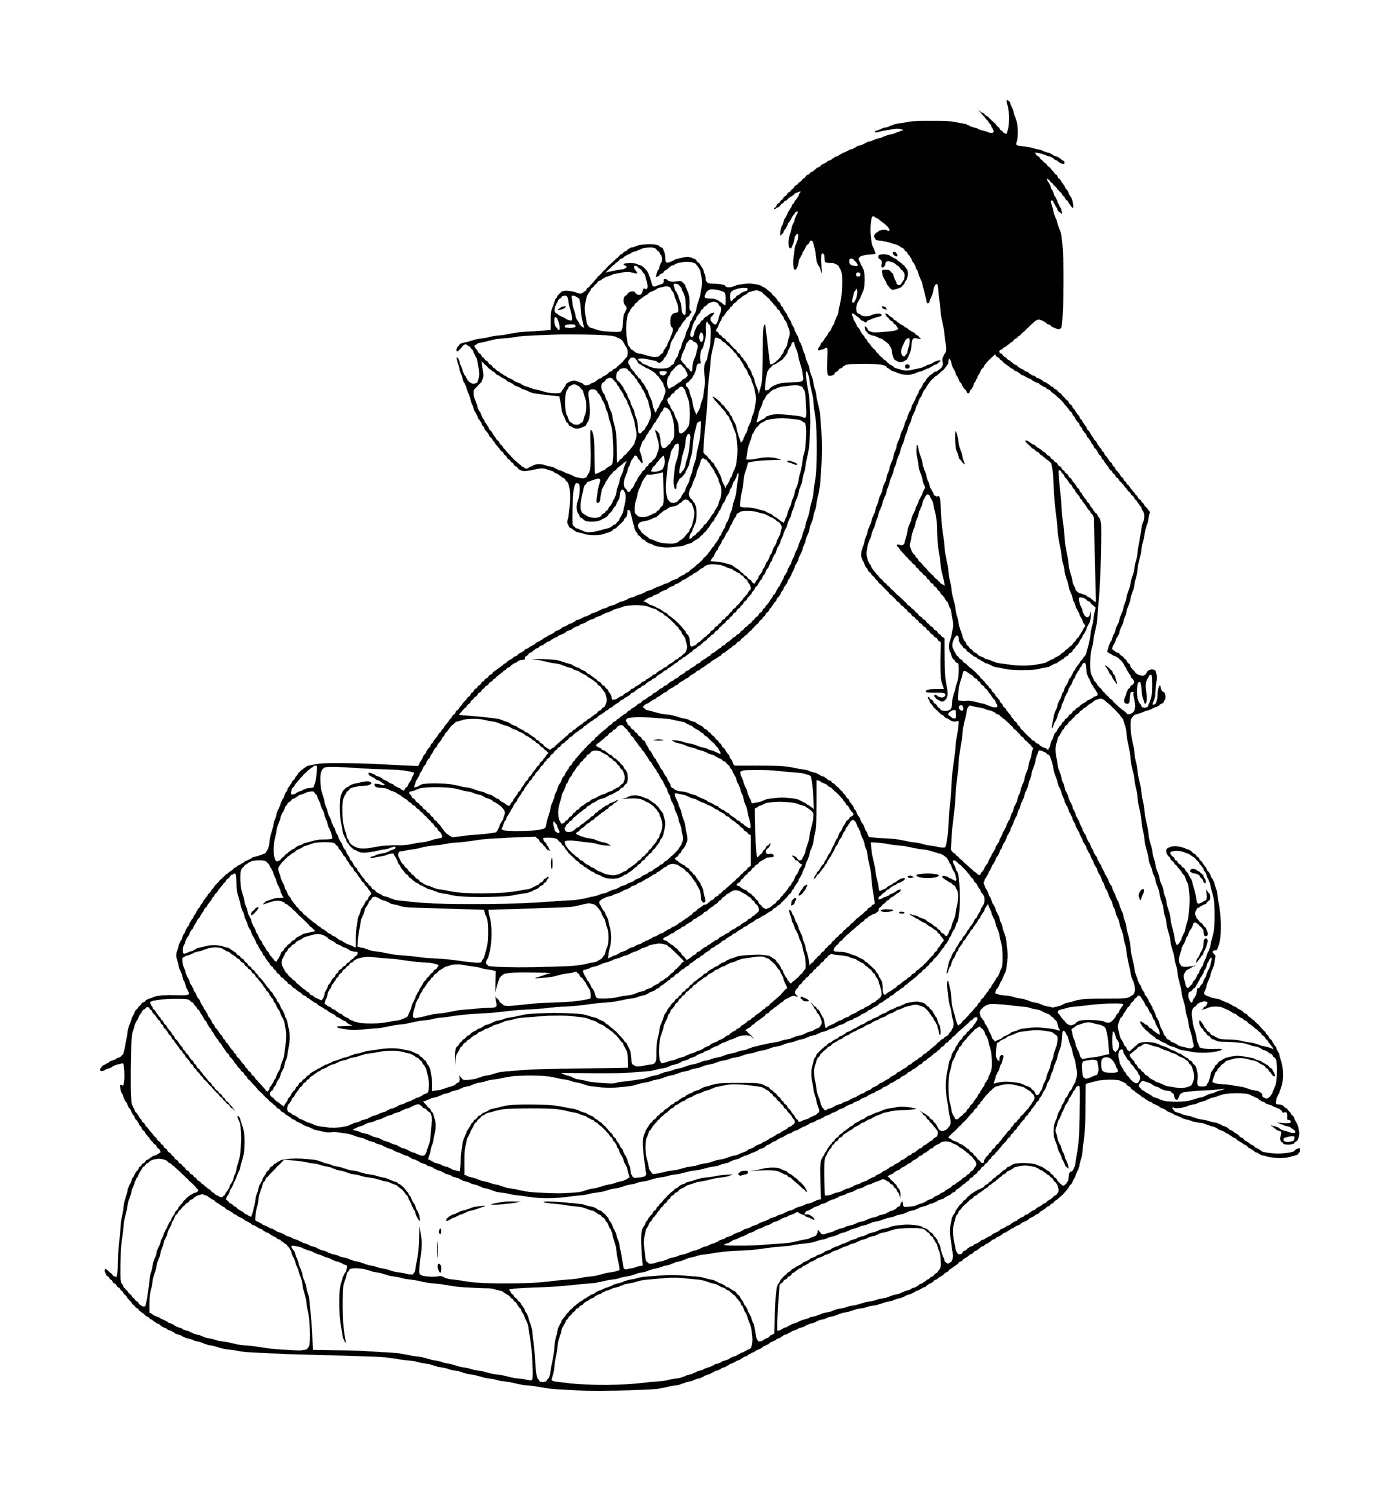  Un hombre de pie junto a una serpiente 